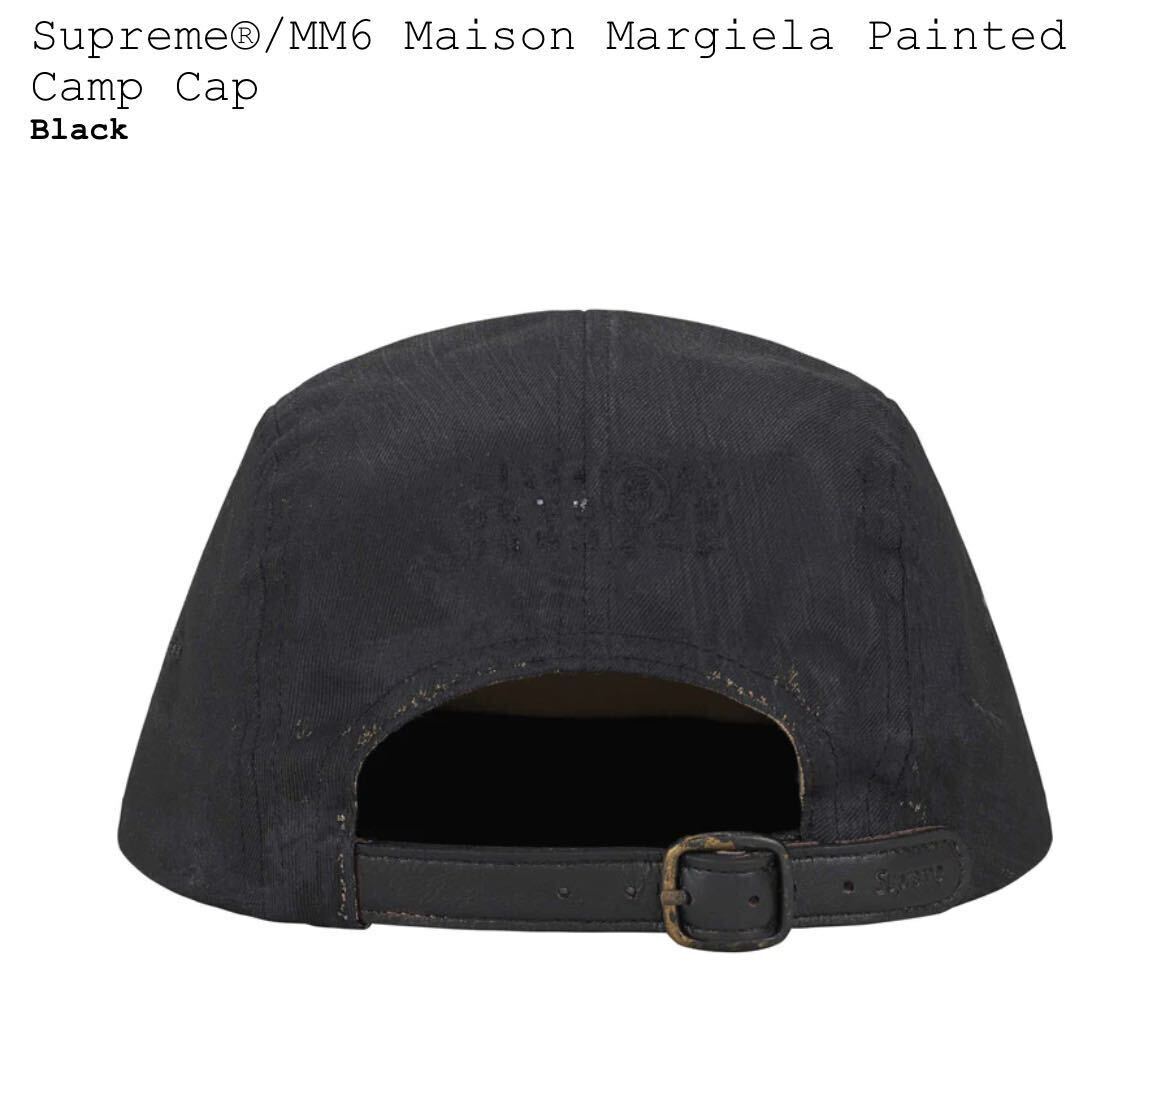 新品 Supreme MM6 Maison Margiela Painted Camp Cap / シュプリーム マルジェラ ペインテッド キャンプ キャップ 送料無料 即納_画像2